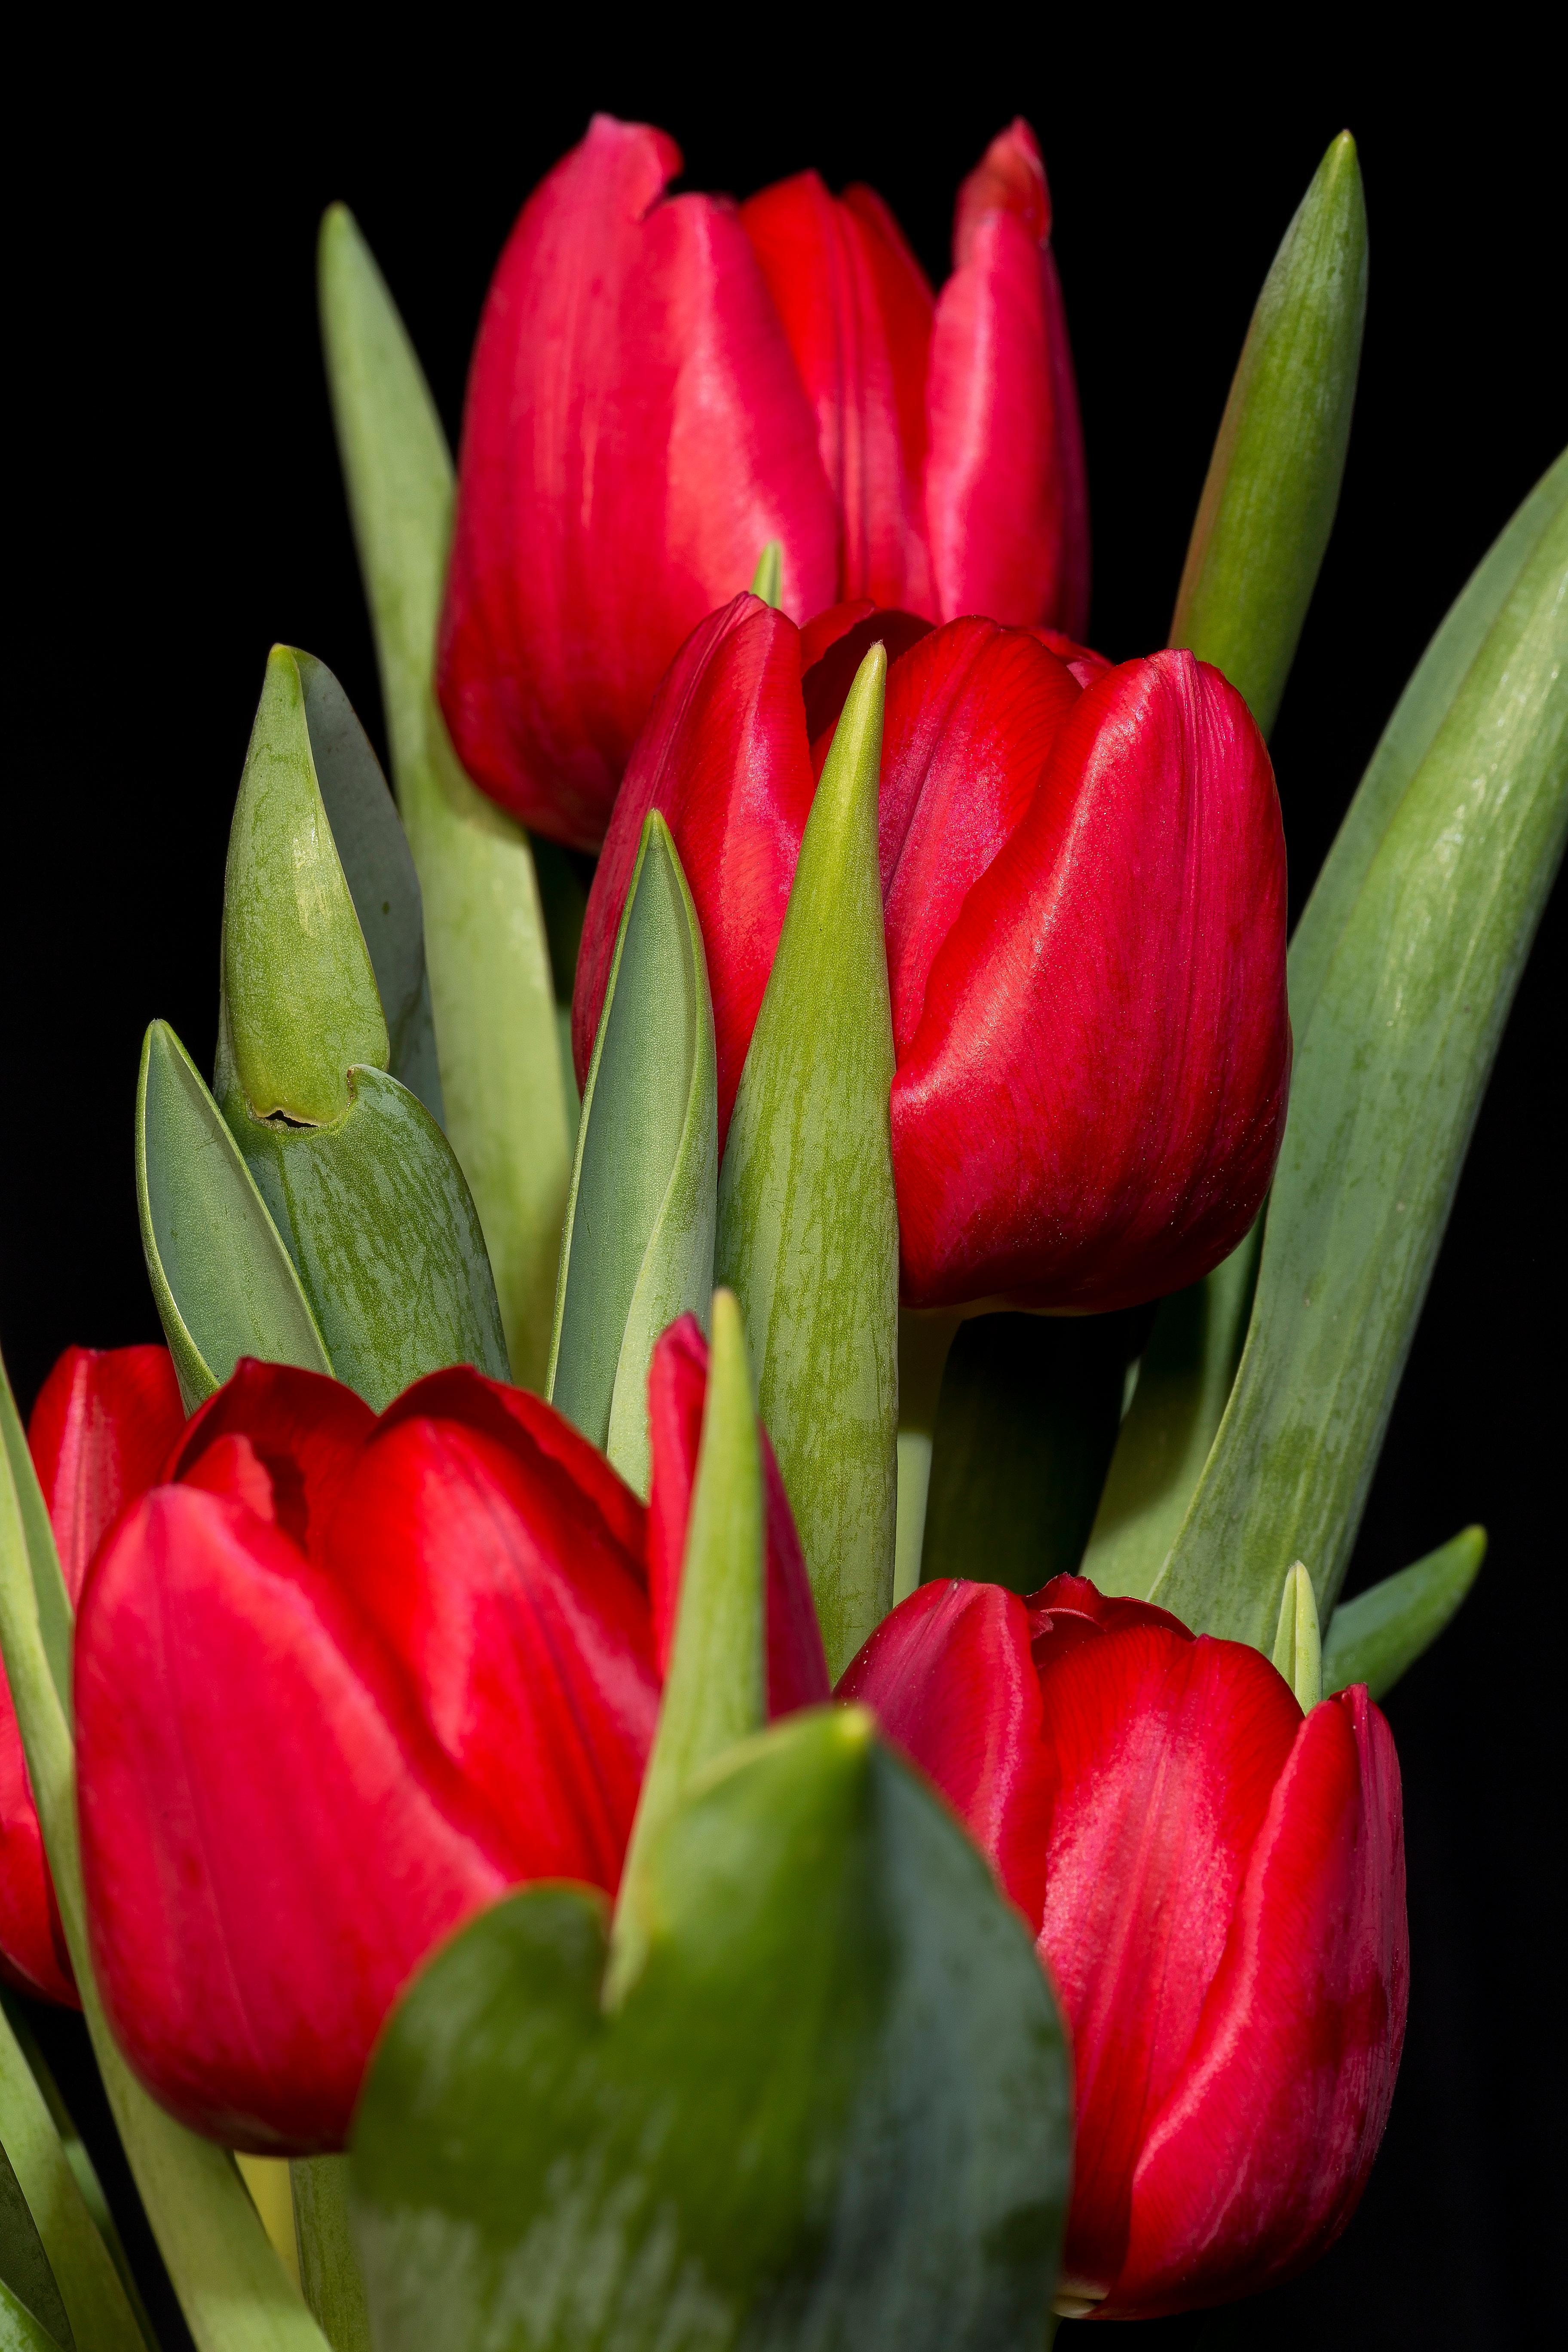 Precooled Tulip Triumph 'Pallade' - Tulip from Leo Berbee Bulb Company